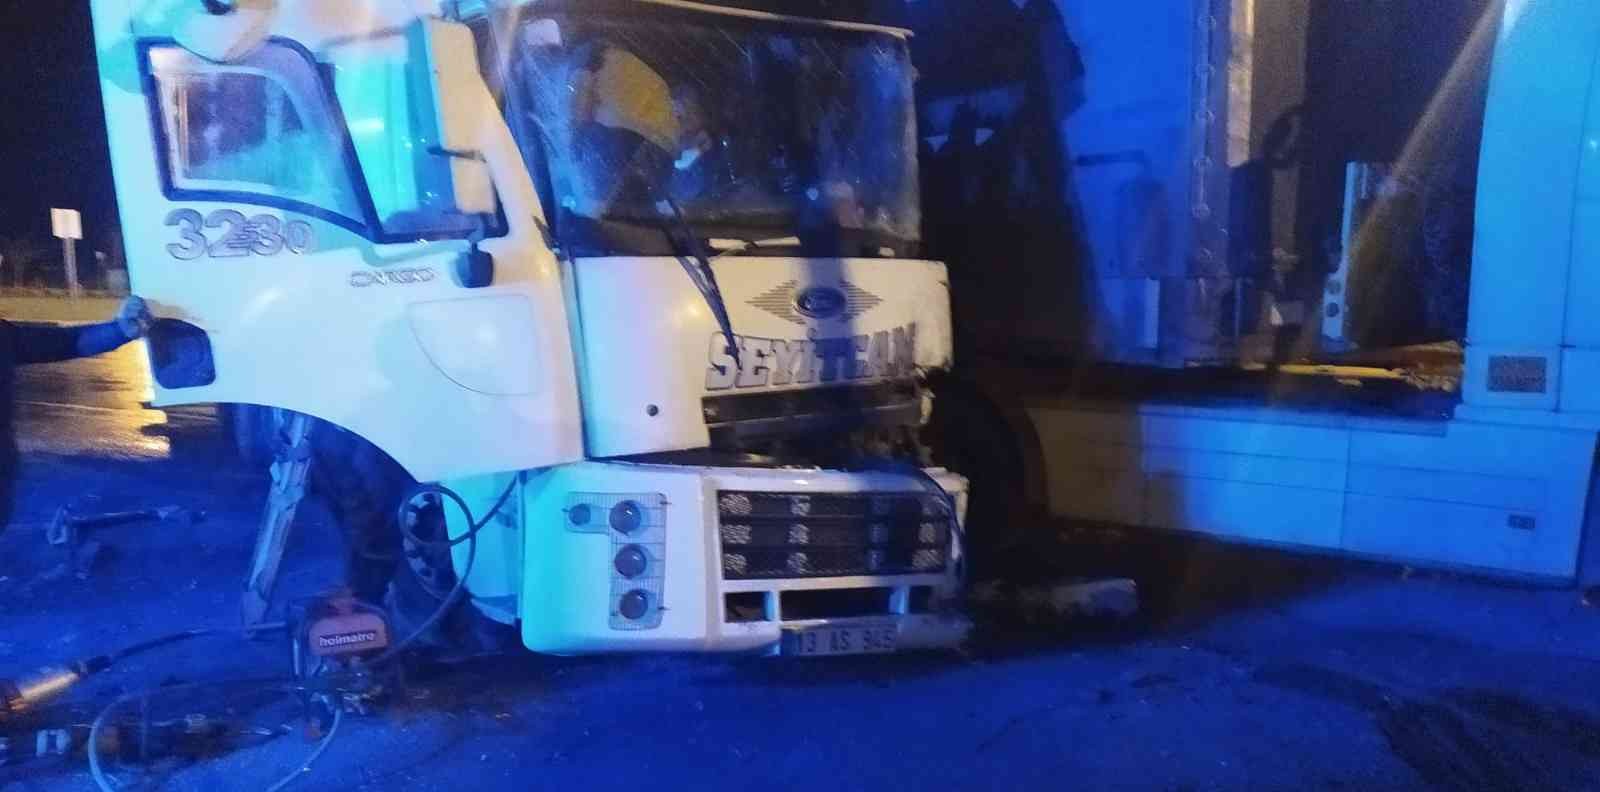 Tatvan’da trafik kazası: 1 yaralı